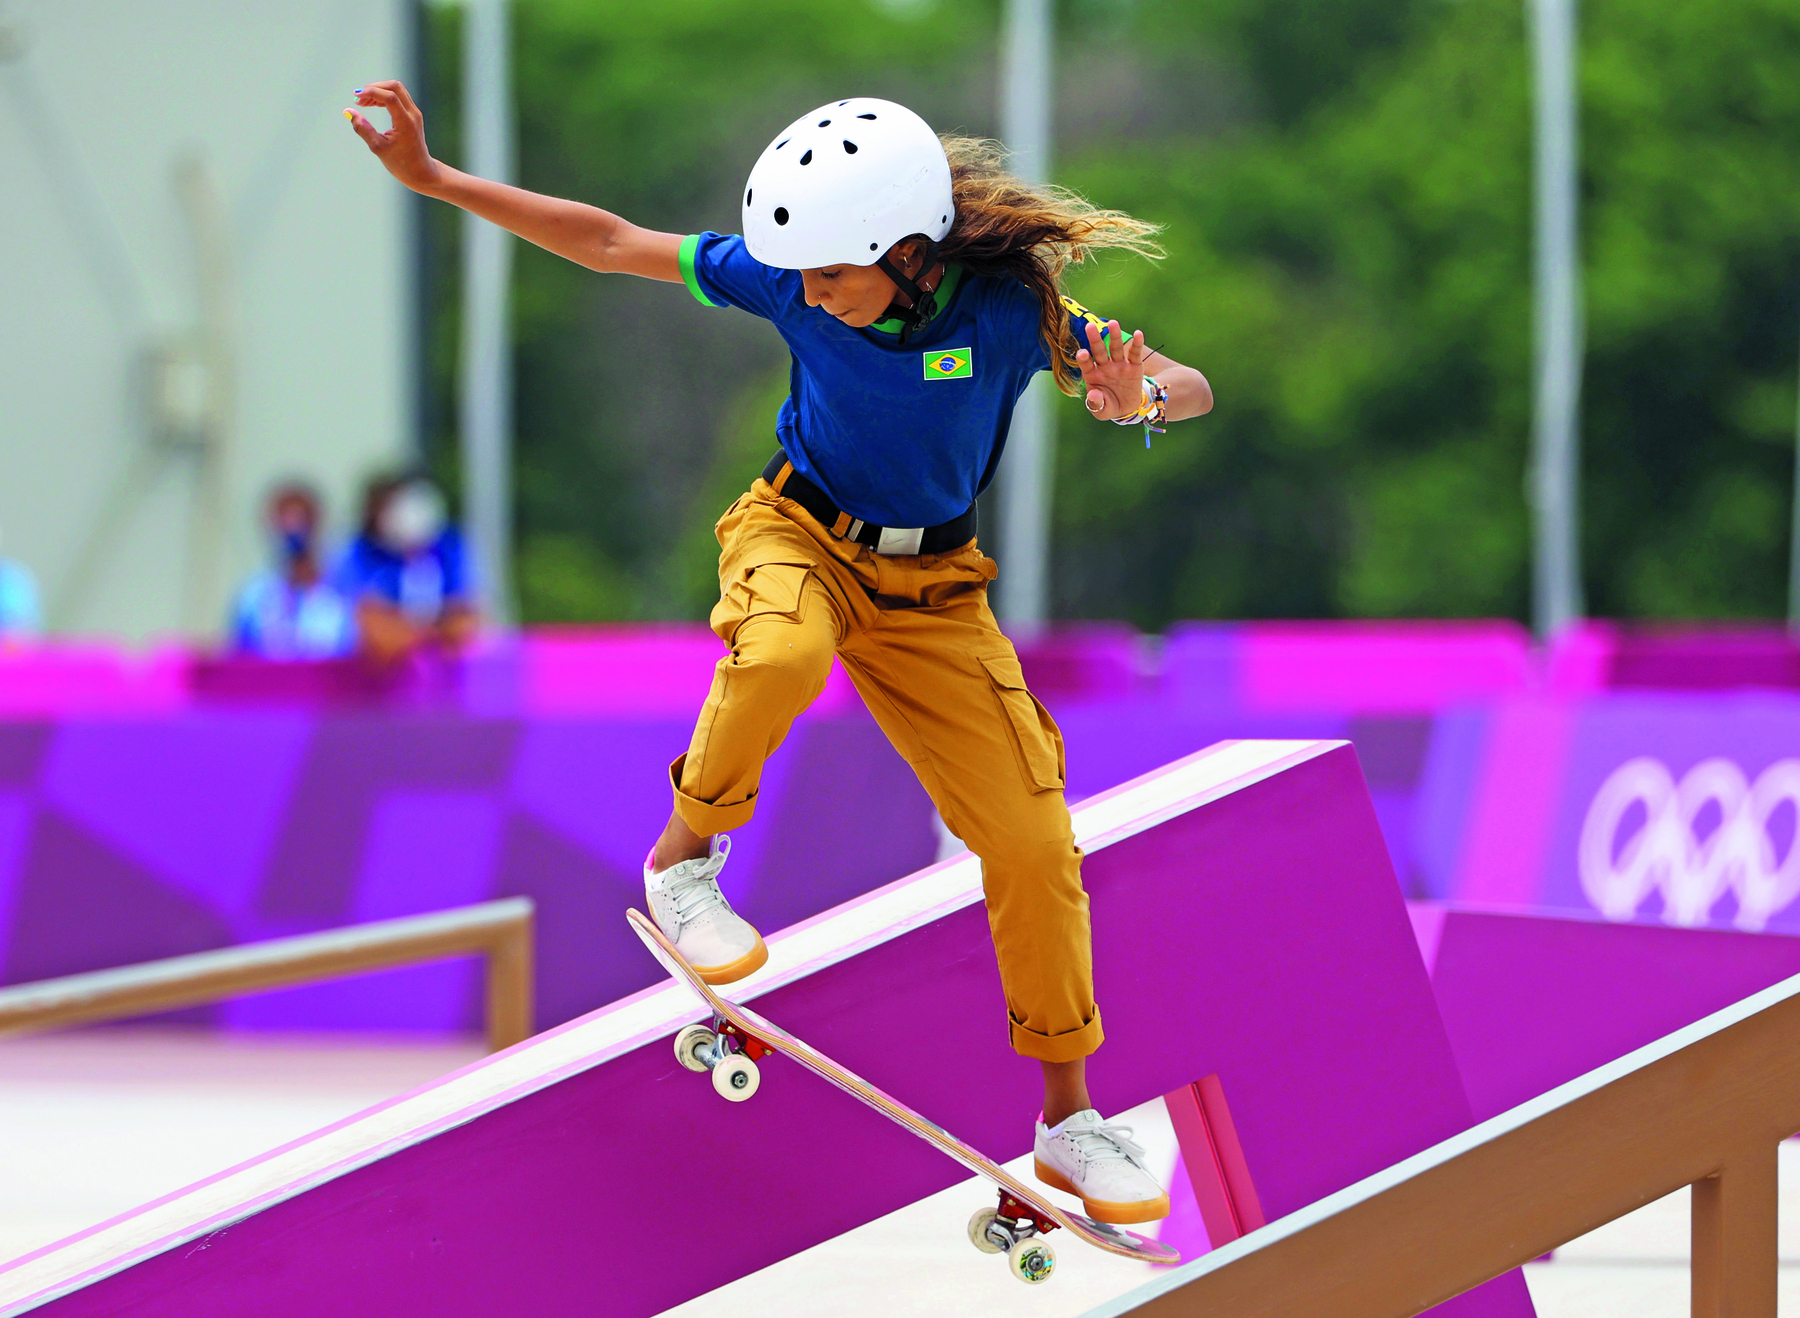 Fotografia. Uma menina realizando manobra sobre um skate. Ela veste camiseta azul com uma bandeira do Brasil desenhada, calça ocre dobrada na altura das canelas e um capacete branco na cabeça. Seus braços estão abertos, levemente flexionados. Os dois pés estão sobre o skate inclinado no ar.